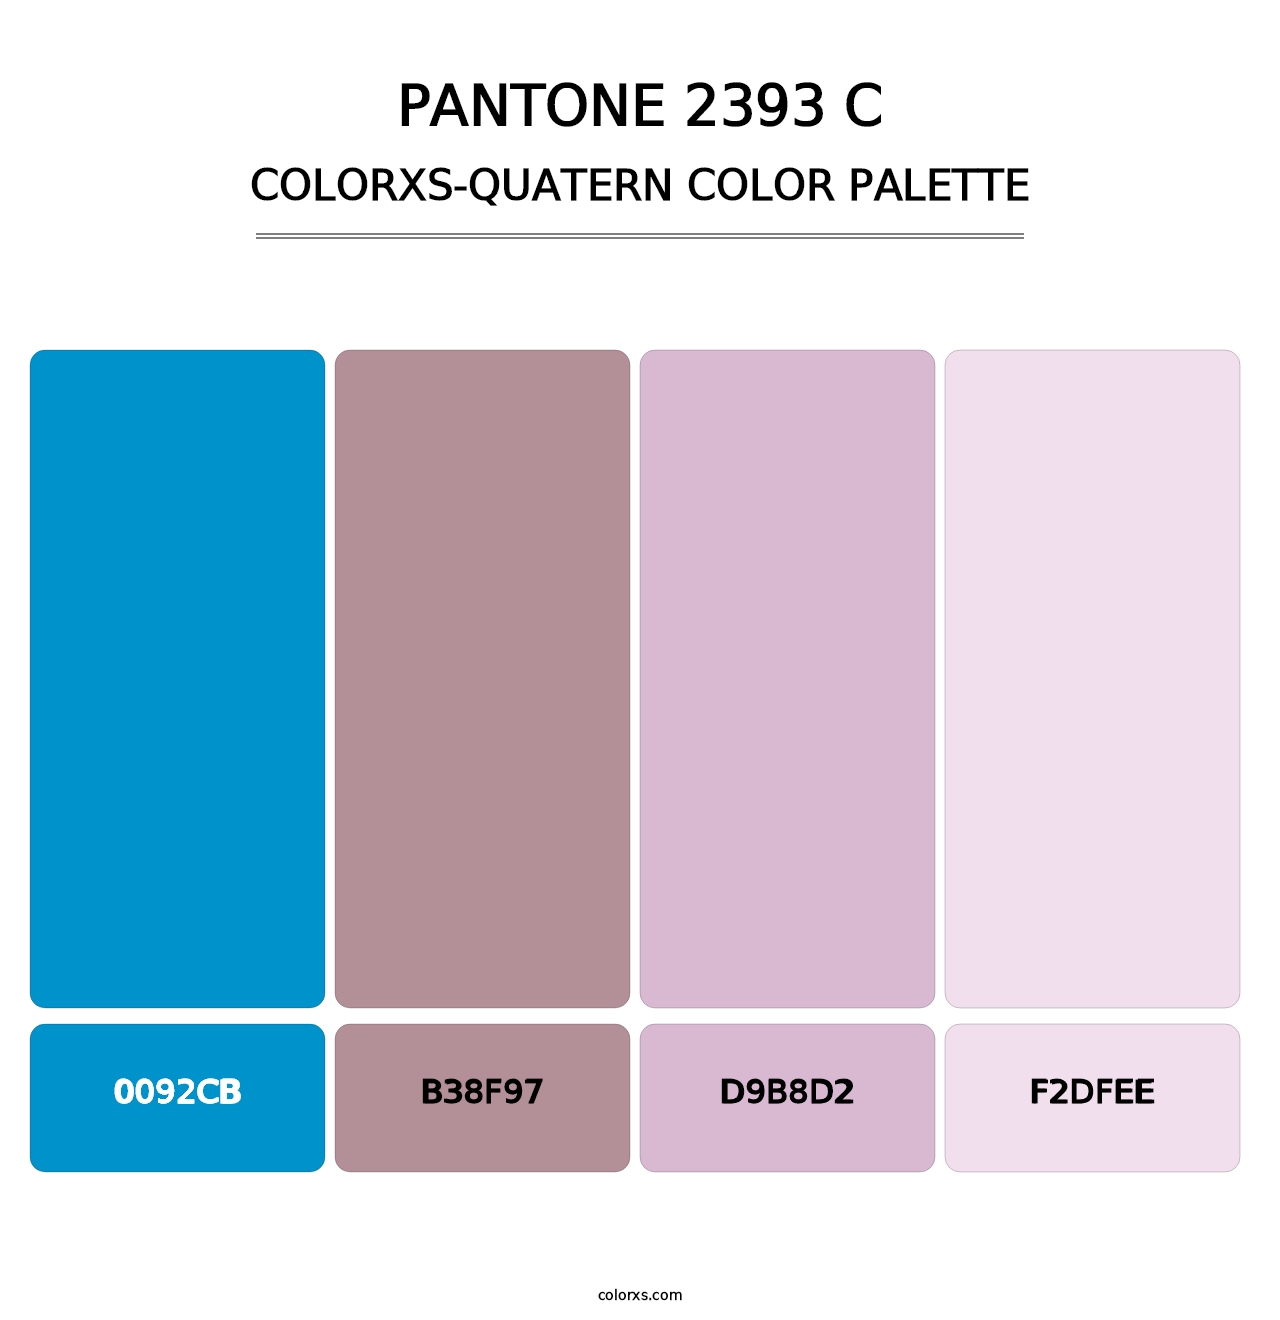 PANTONE 2393 C - Colorxs Quatern Palette